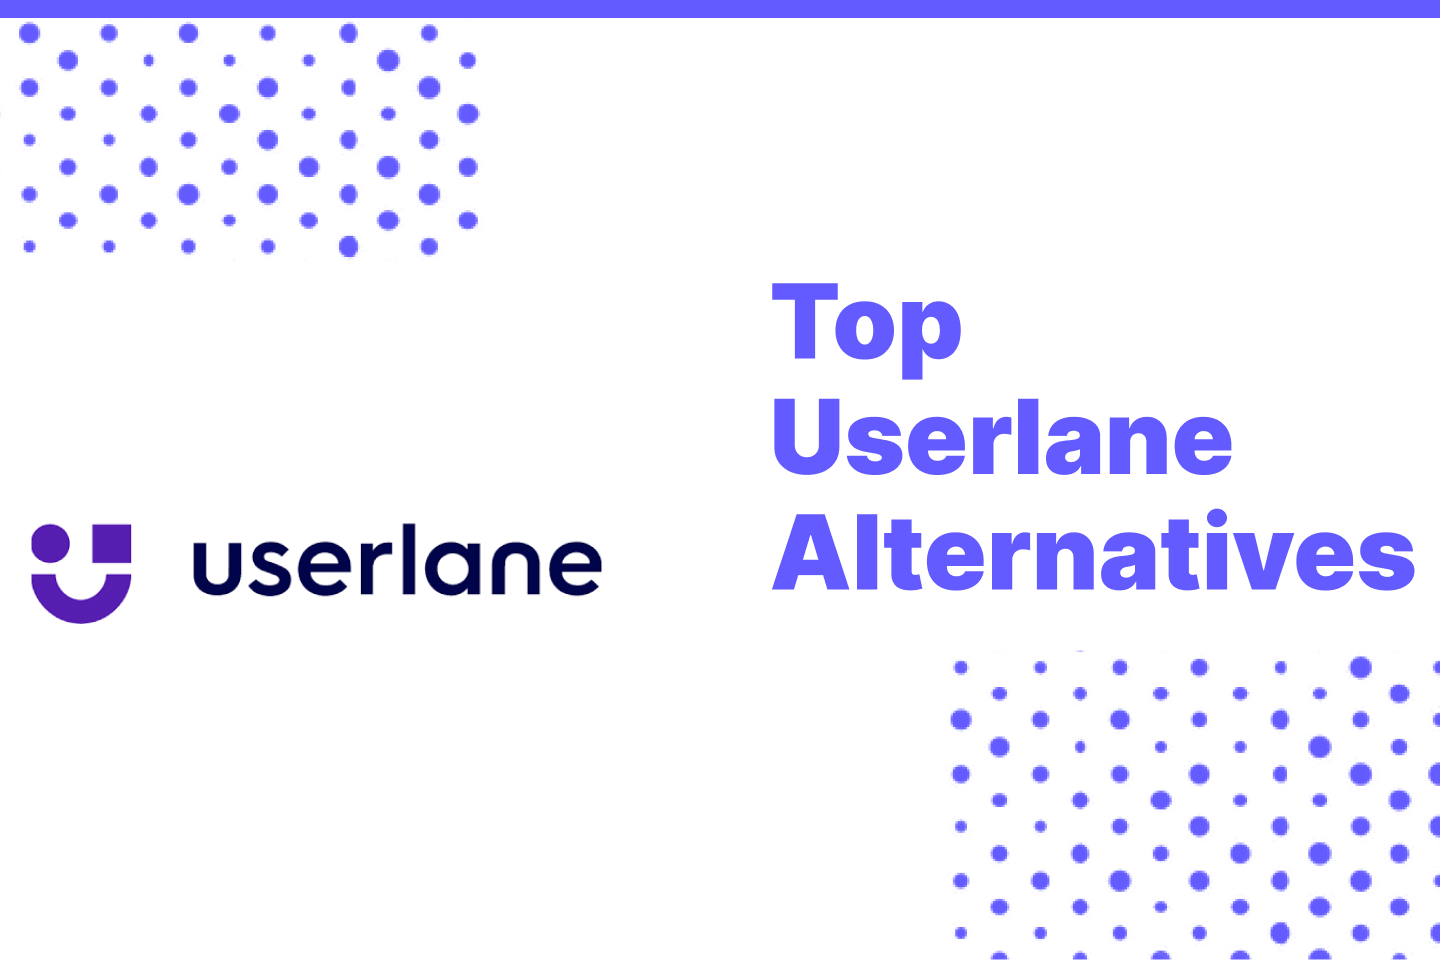 Top Userlane Alternatives for 2022